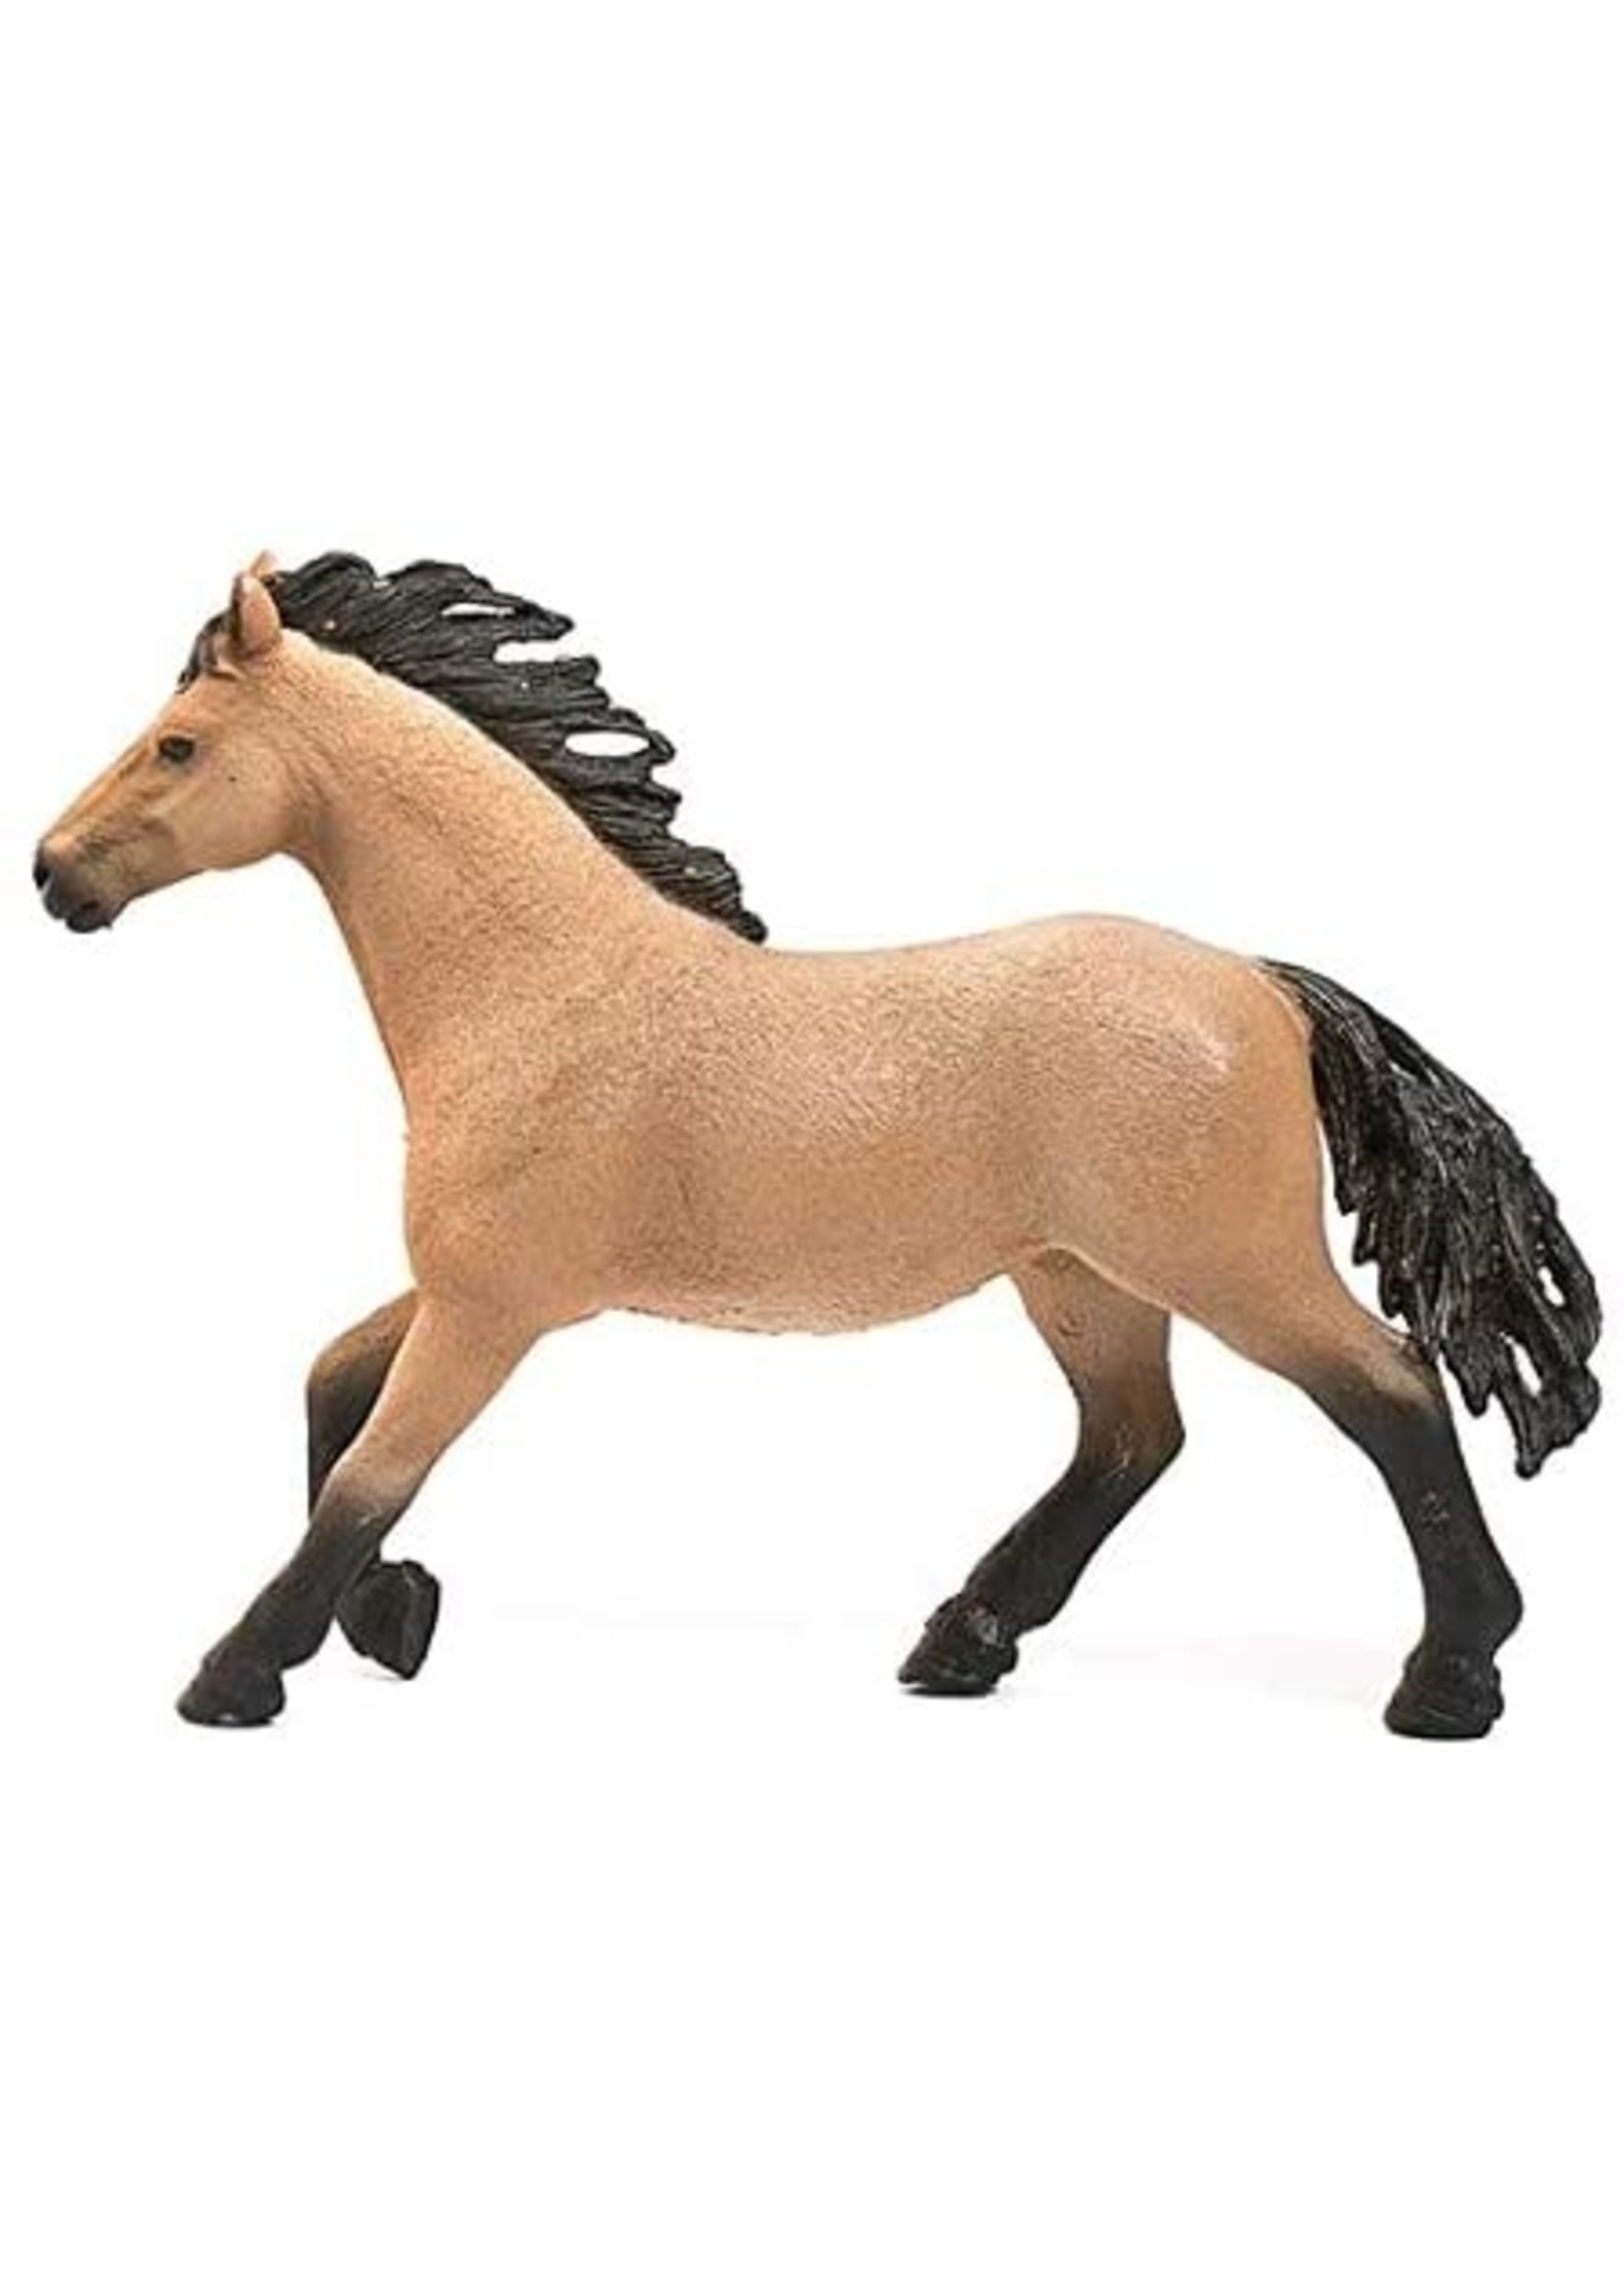 Schleich 13853 - Quarter Horse Stallion